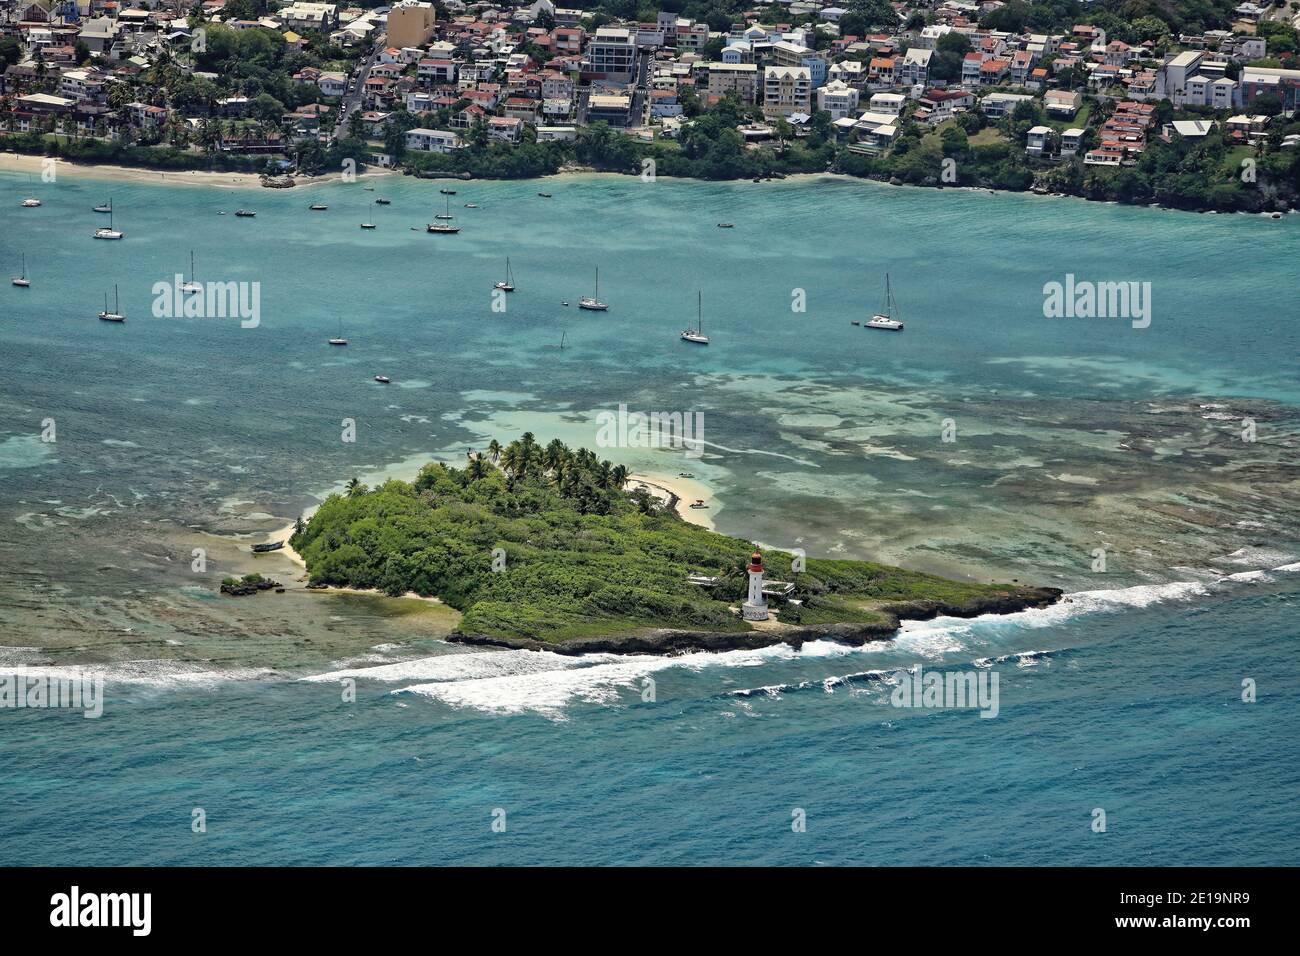 Guadalupa, basse Terre: Veduta aerea dell'isolotto corallino di le Gosier al largo della città omonima con il faro di le Gosier situato a sud t Foto Stock